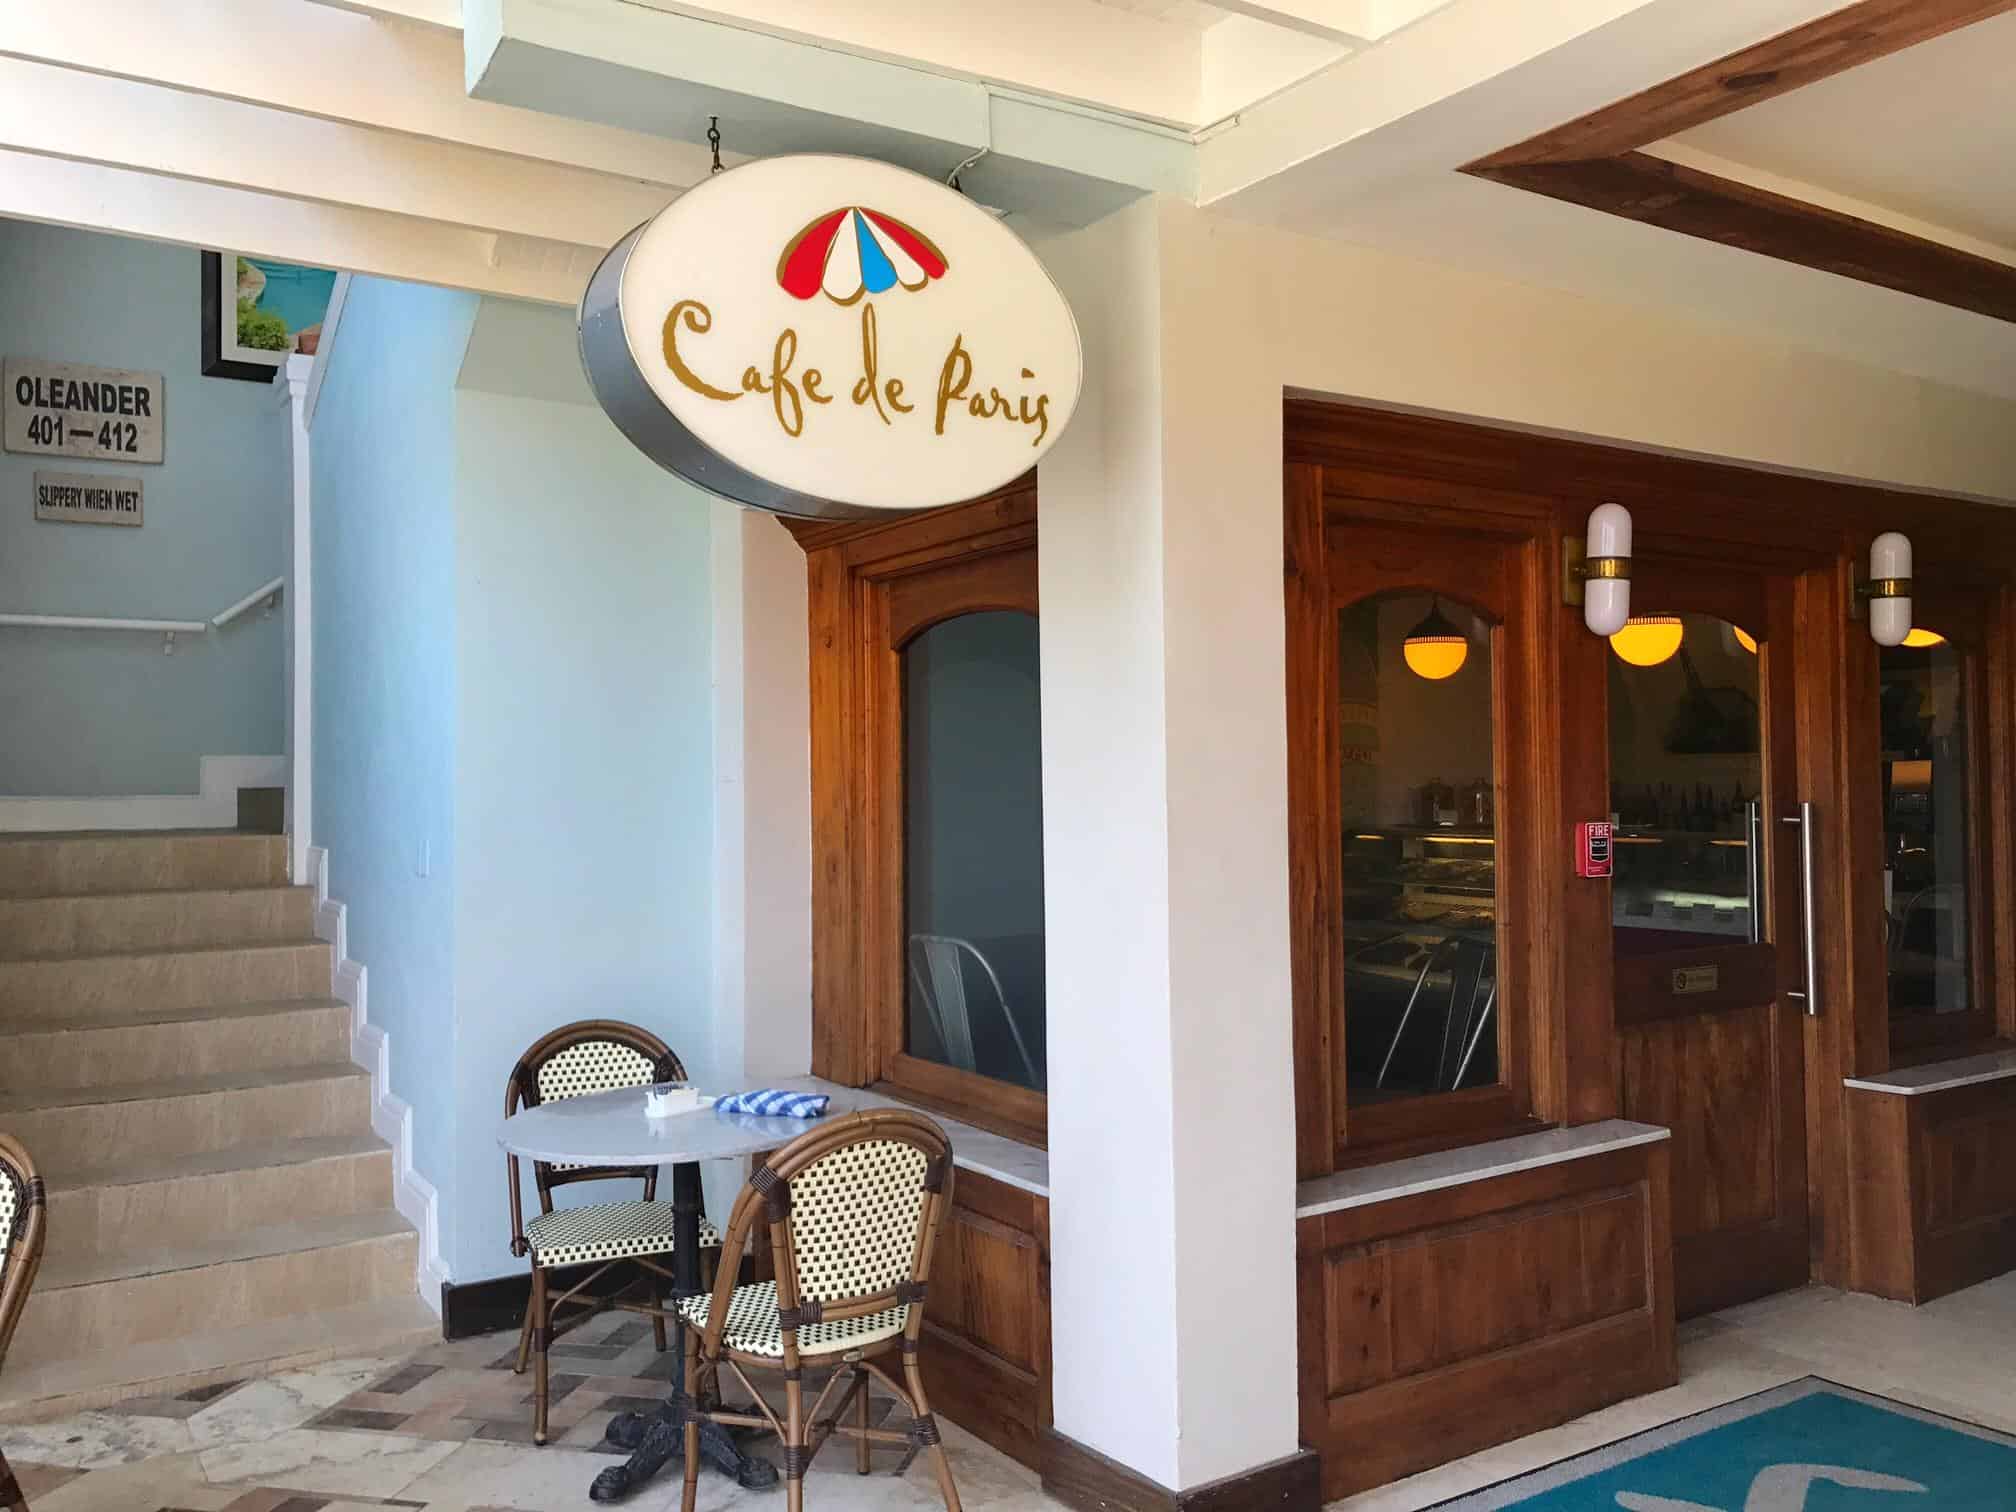 Sandals montego bay Jamaica Resort cafe de paris 